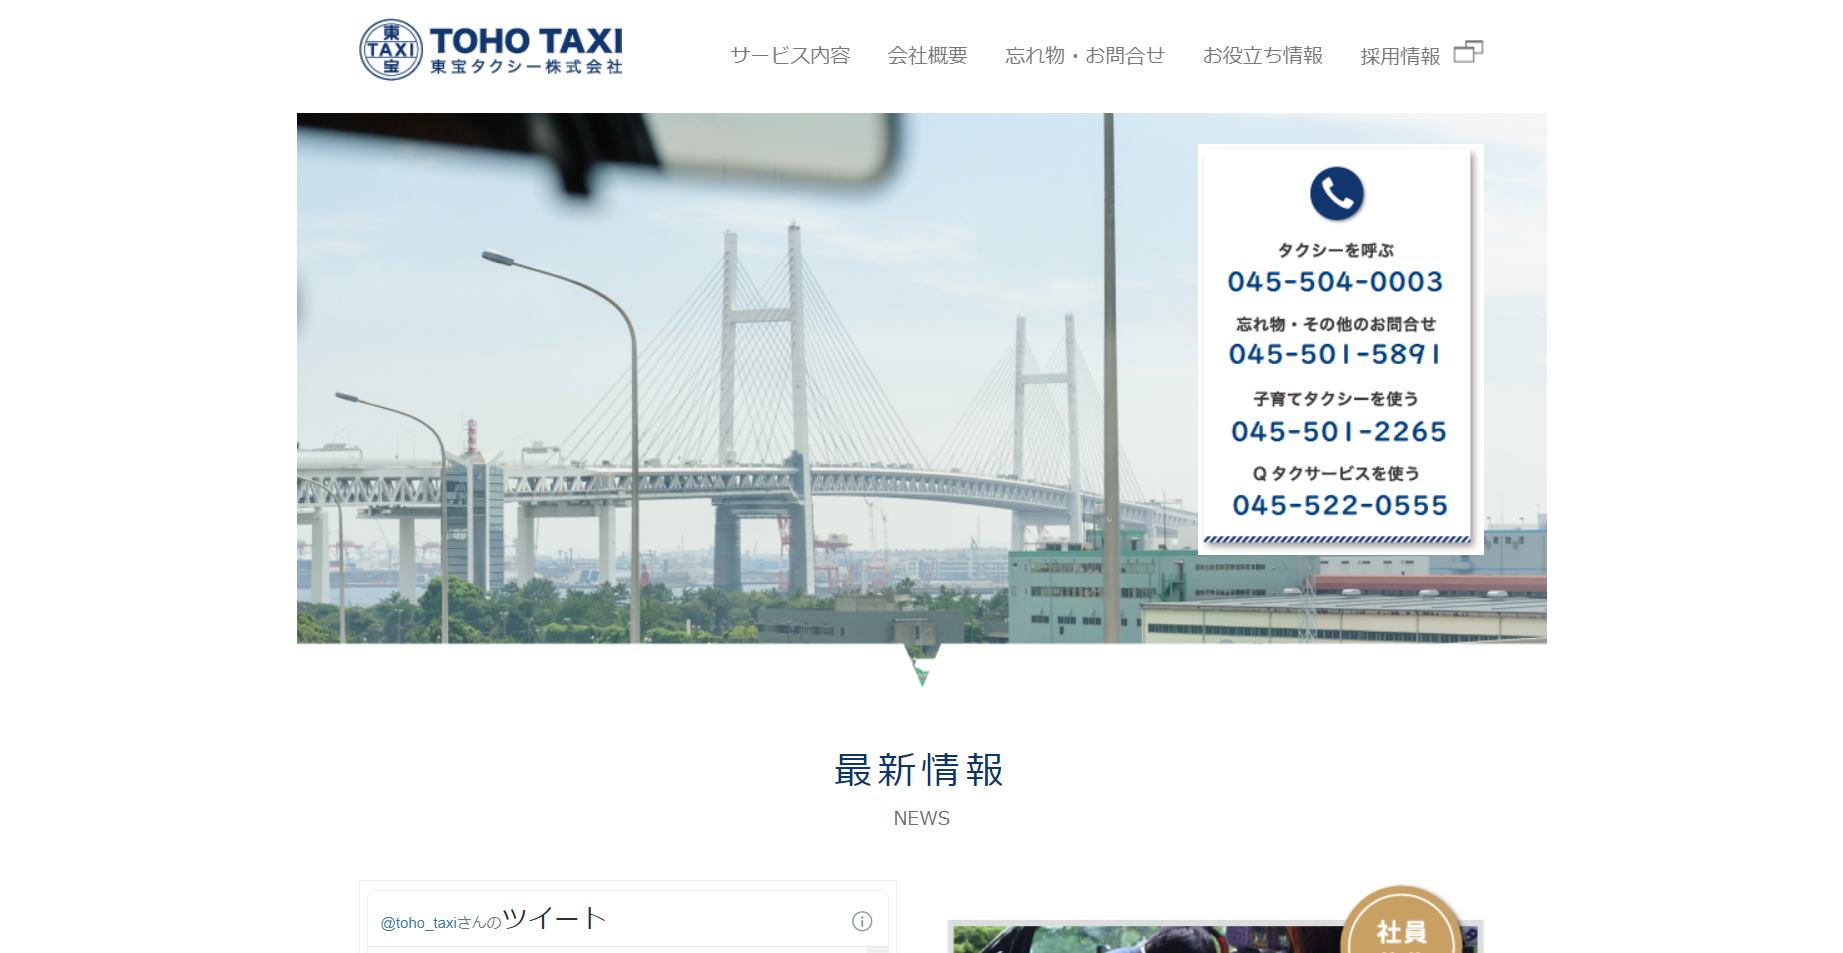 タクシー会社のホームページ制作